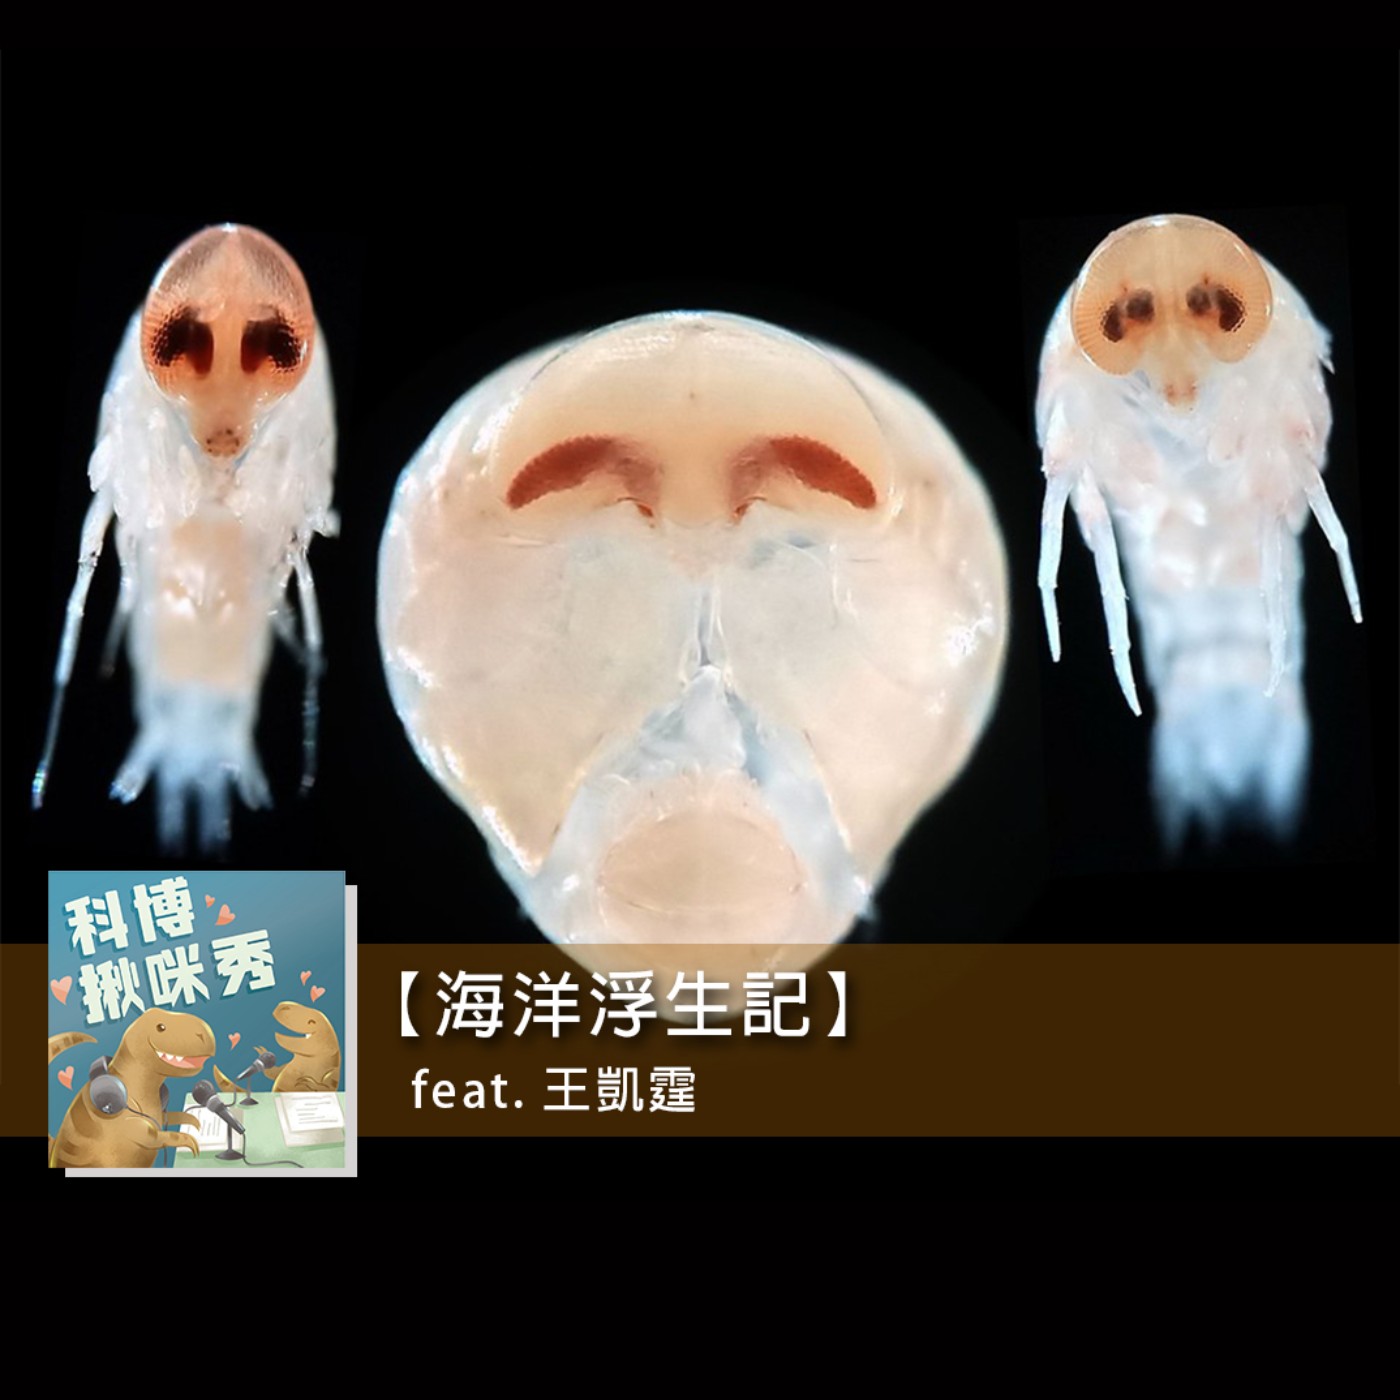 EP.41 海洋浮生記 feat. 王凱霆 aka 海陸無敵通